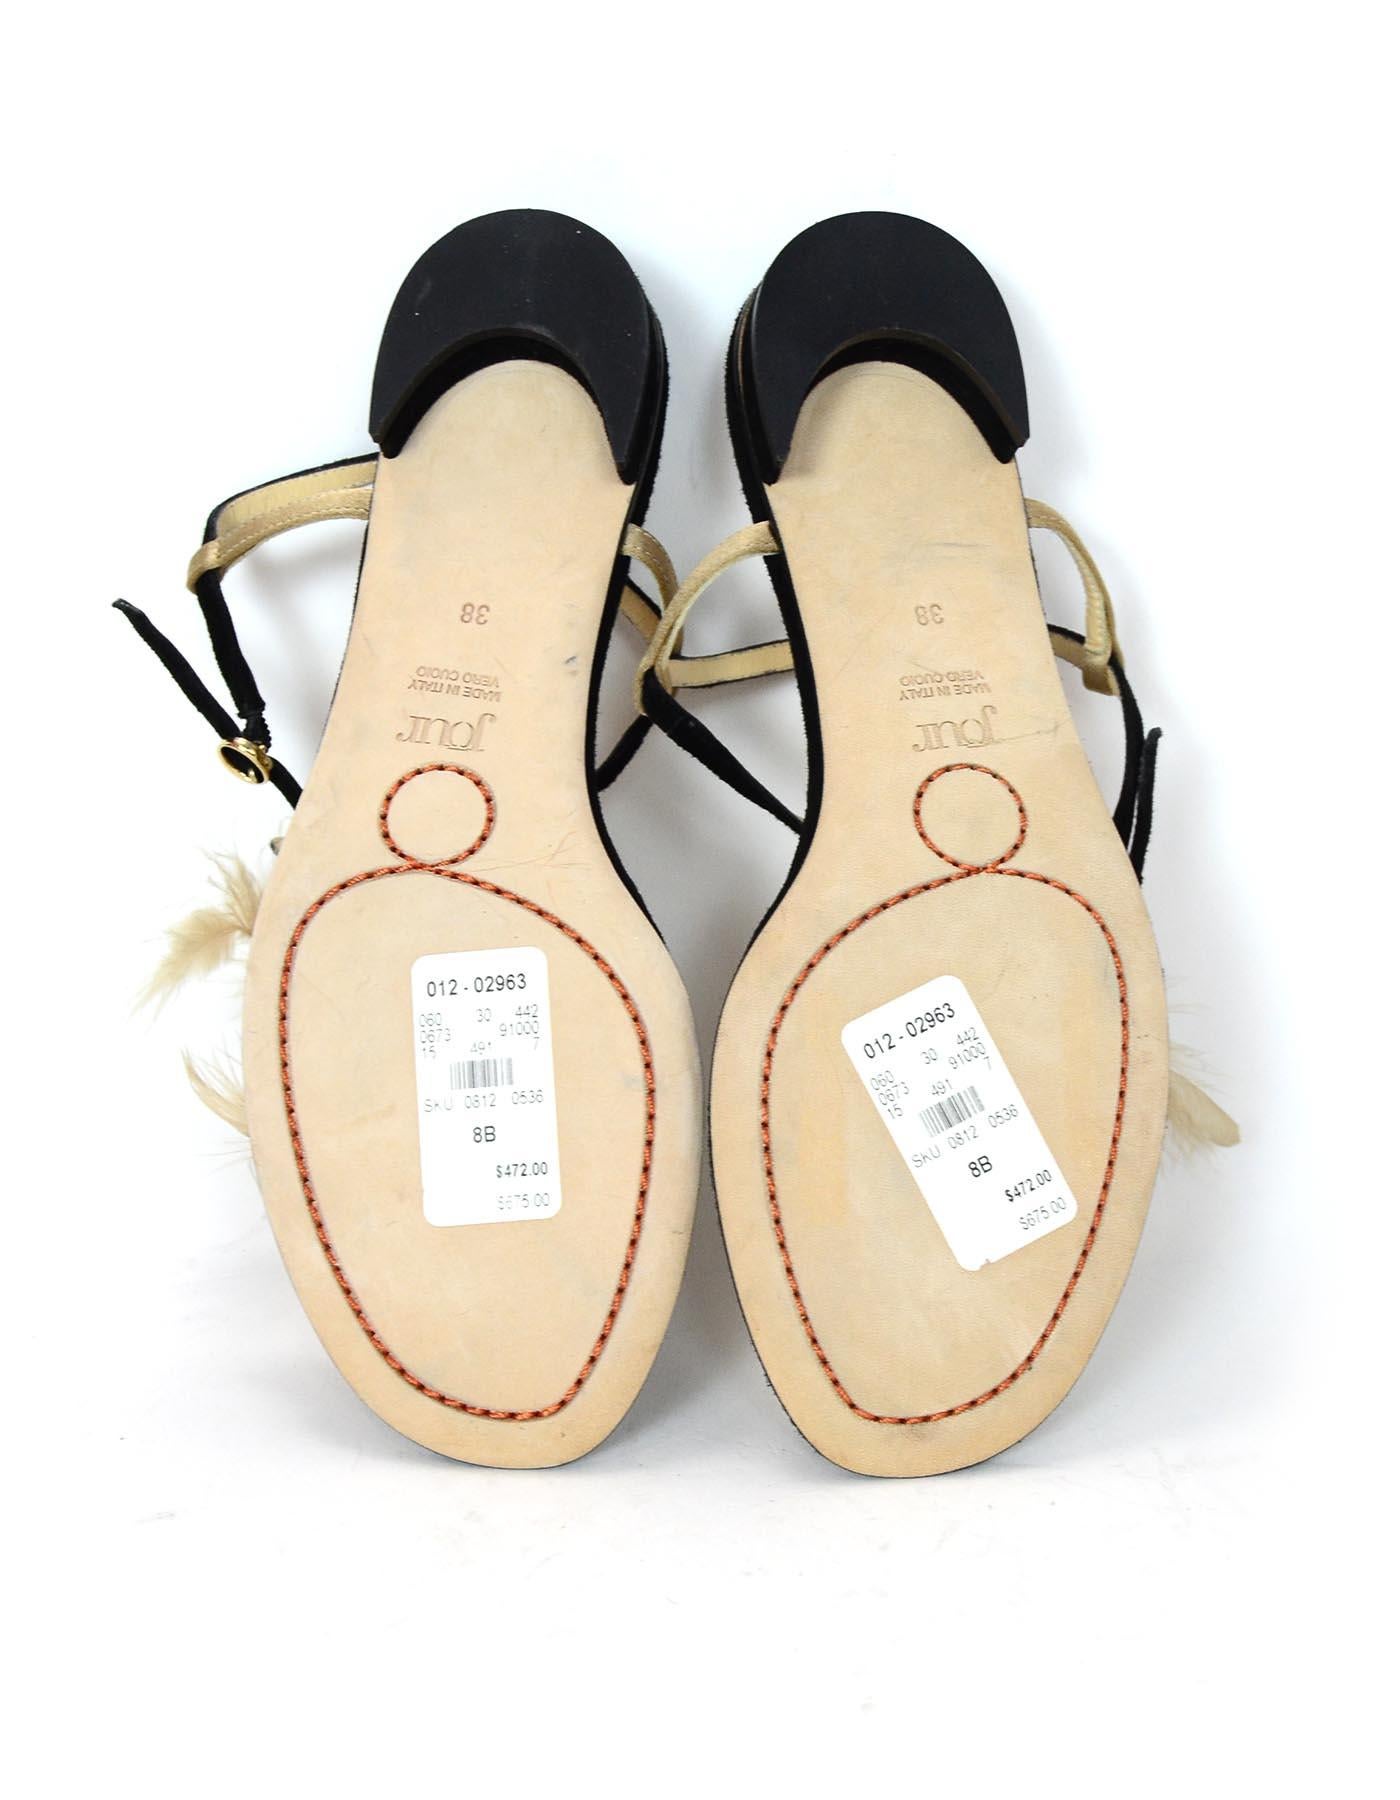 Women's Jour Black Suede Sandals W/ Feather Detail Sz 38 rt. $675